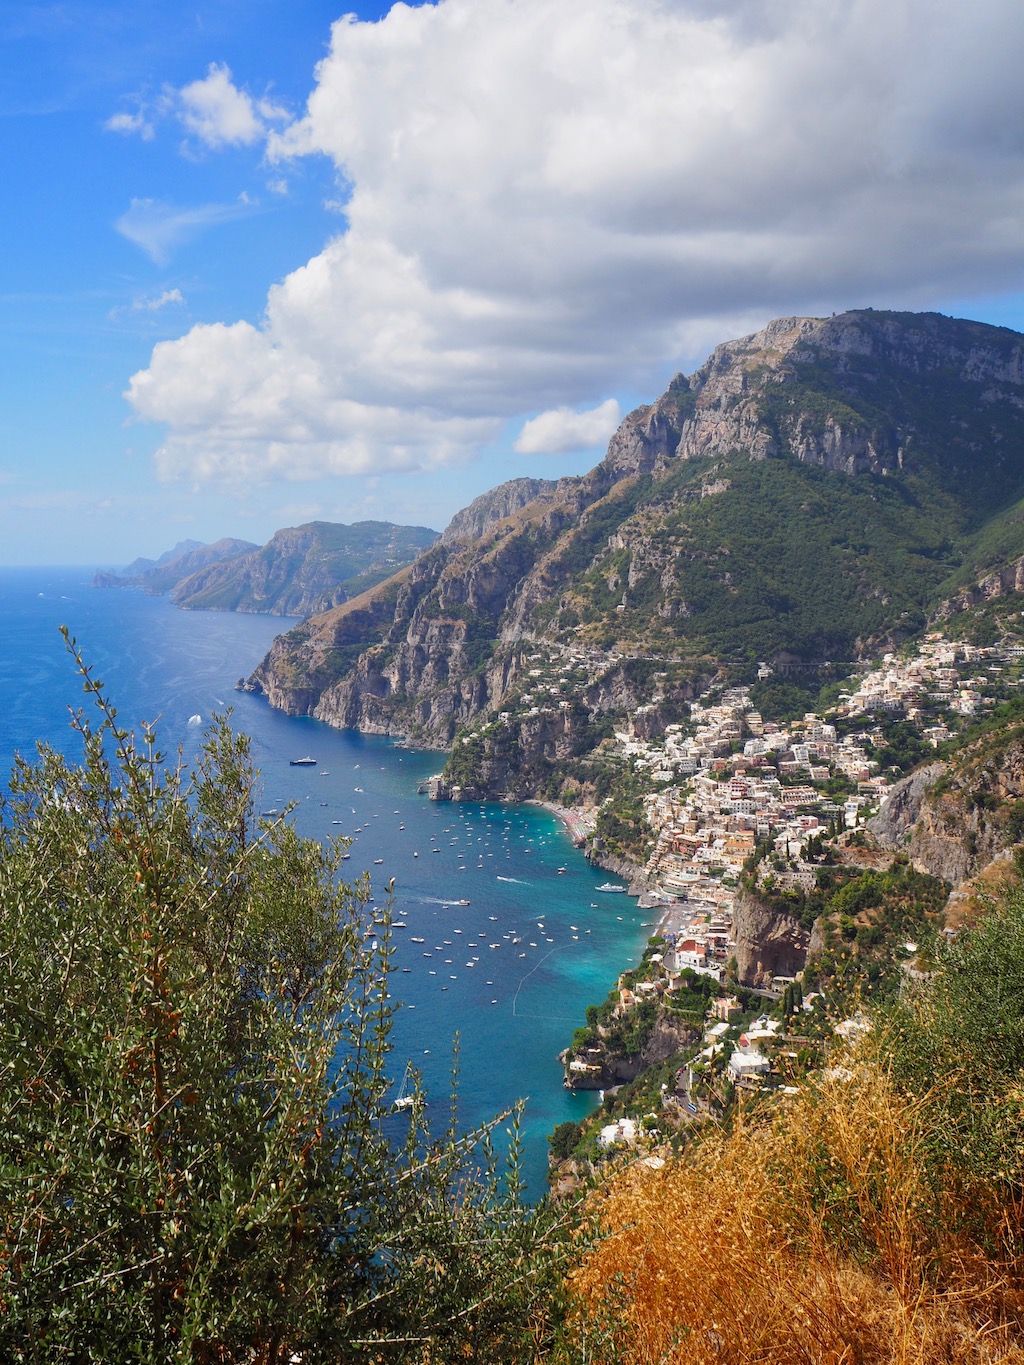 Amalfi view from Sentiero degli Dei Positano | The Postcard